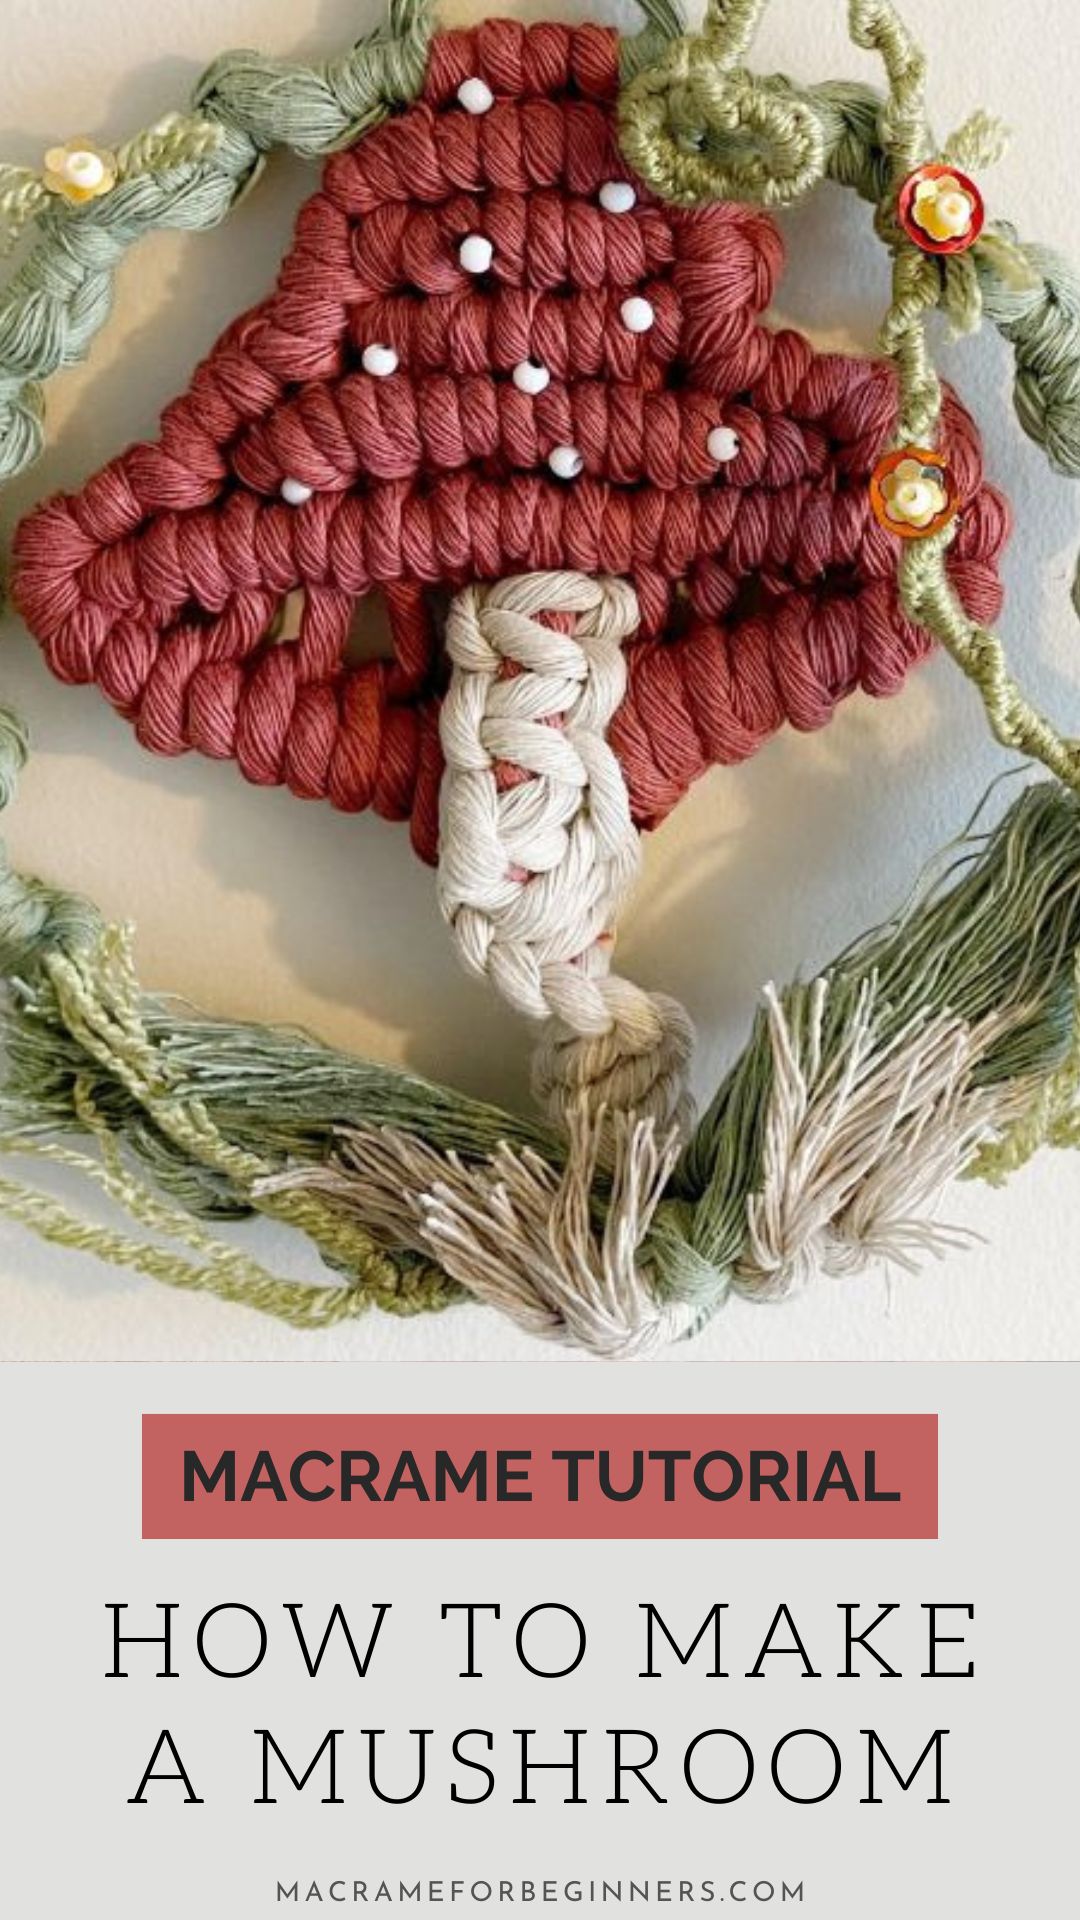 Beautiful Macrame Mushroom Tutorial by Simply Inspired - DIY Easy Pattern 